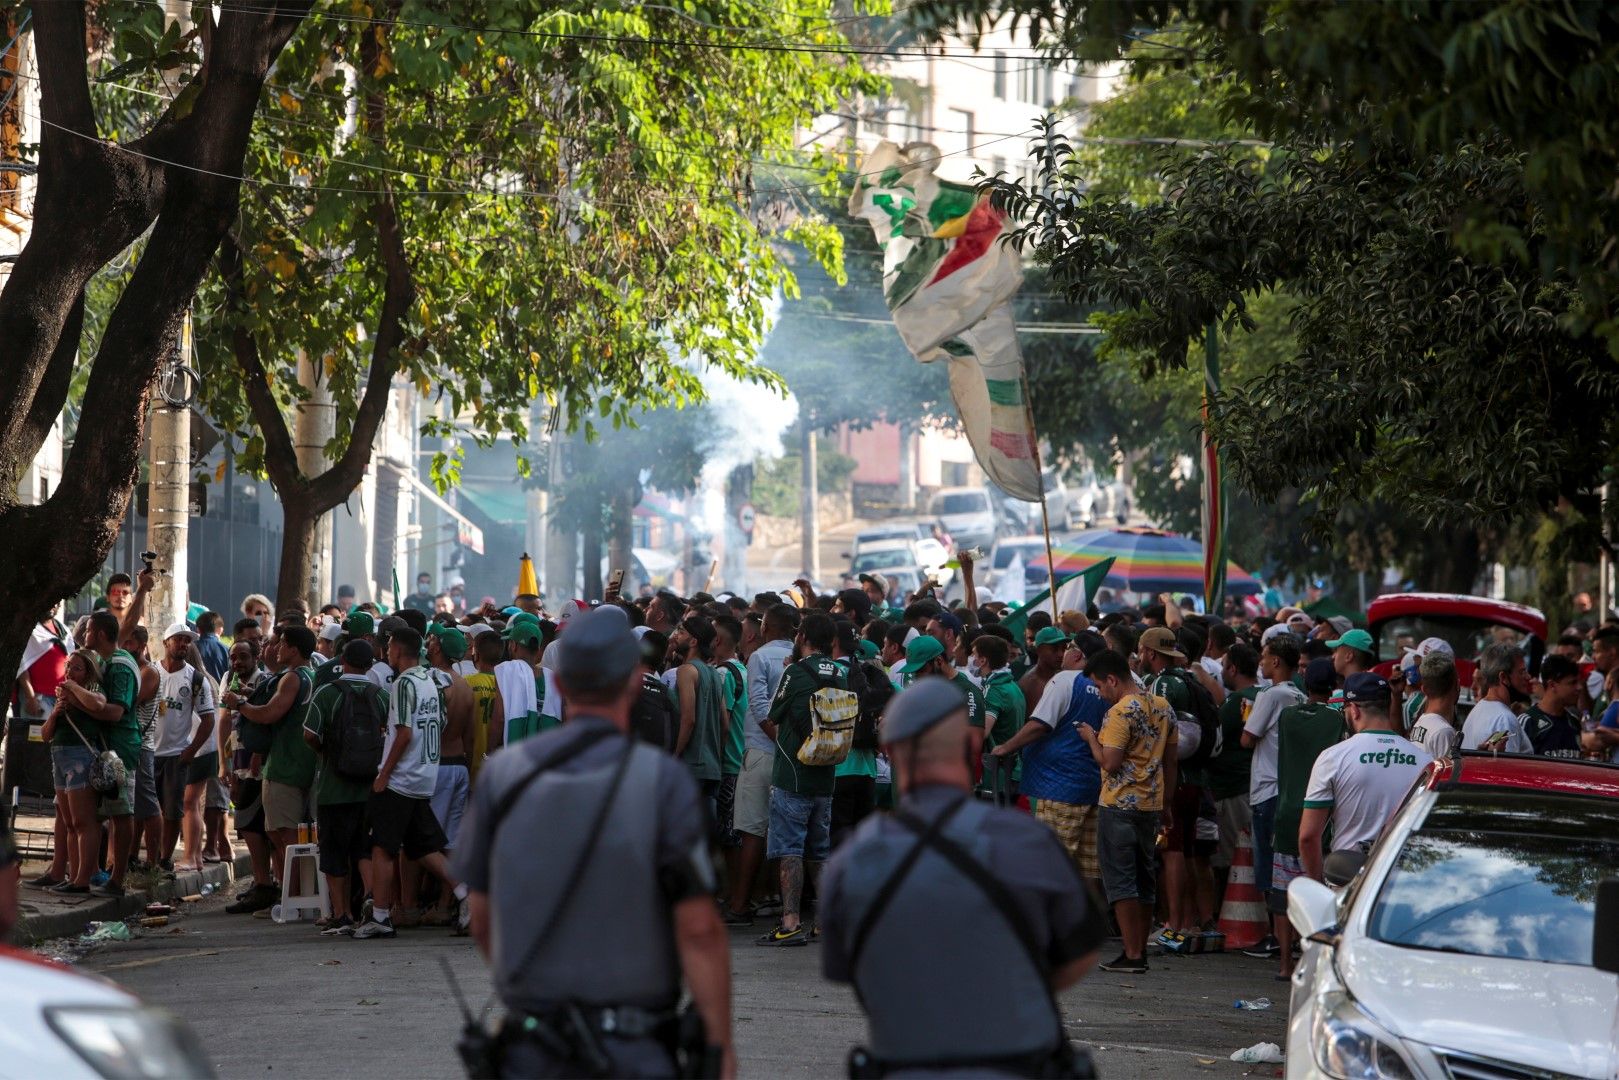 Карнавал със сълзи, но от радост - няколко огромни квартала на многомилионния Сао Пауло бяха изцяло в зелено около мача, а след победата на Палмейрас настана еуфория